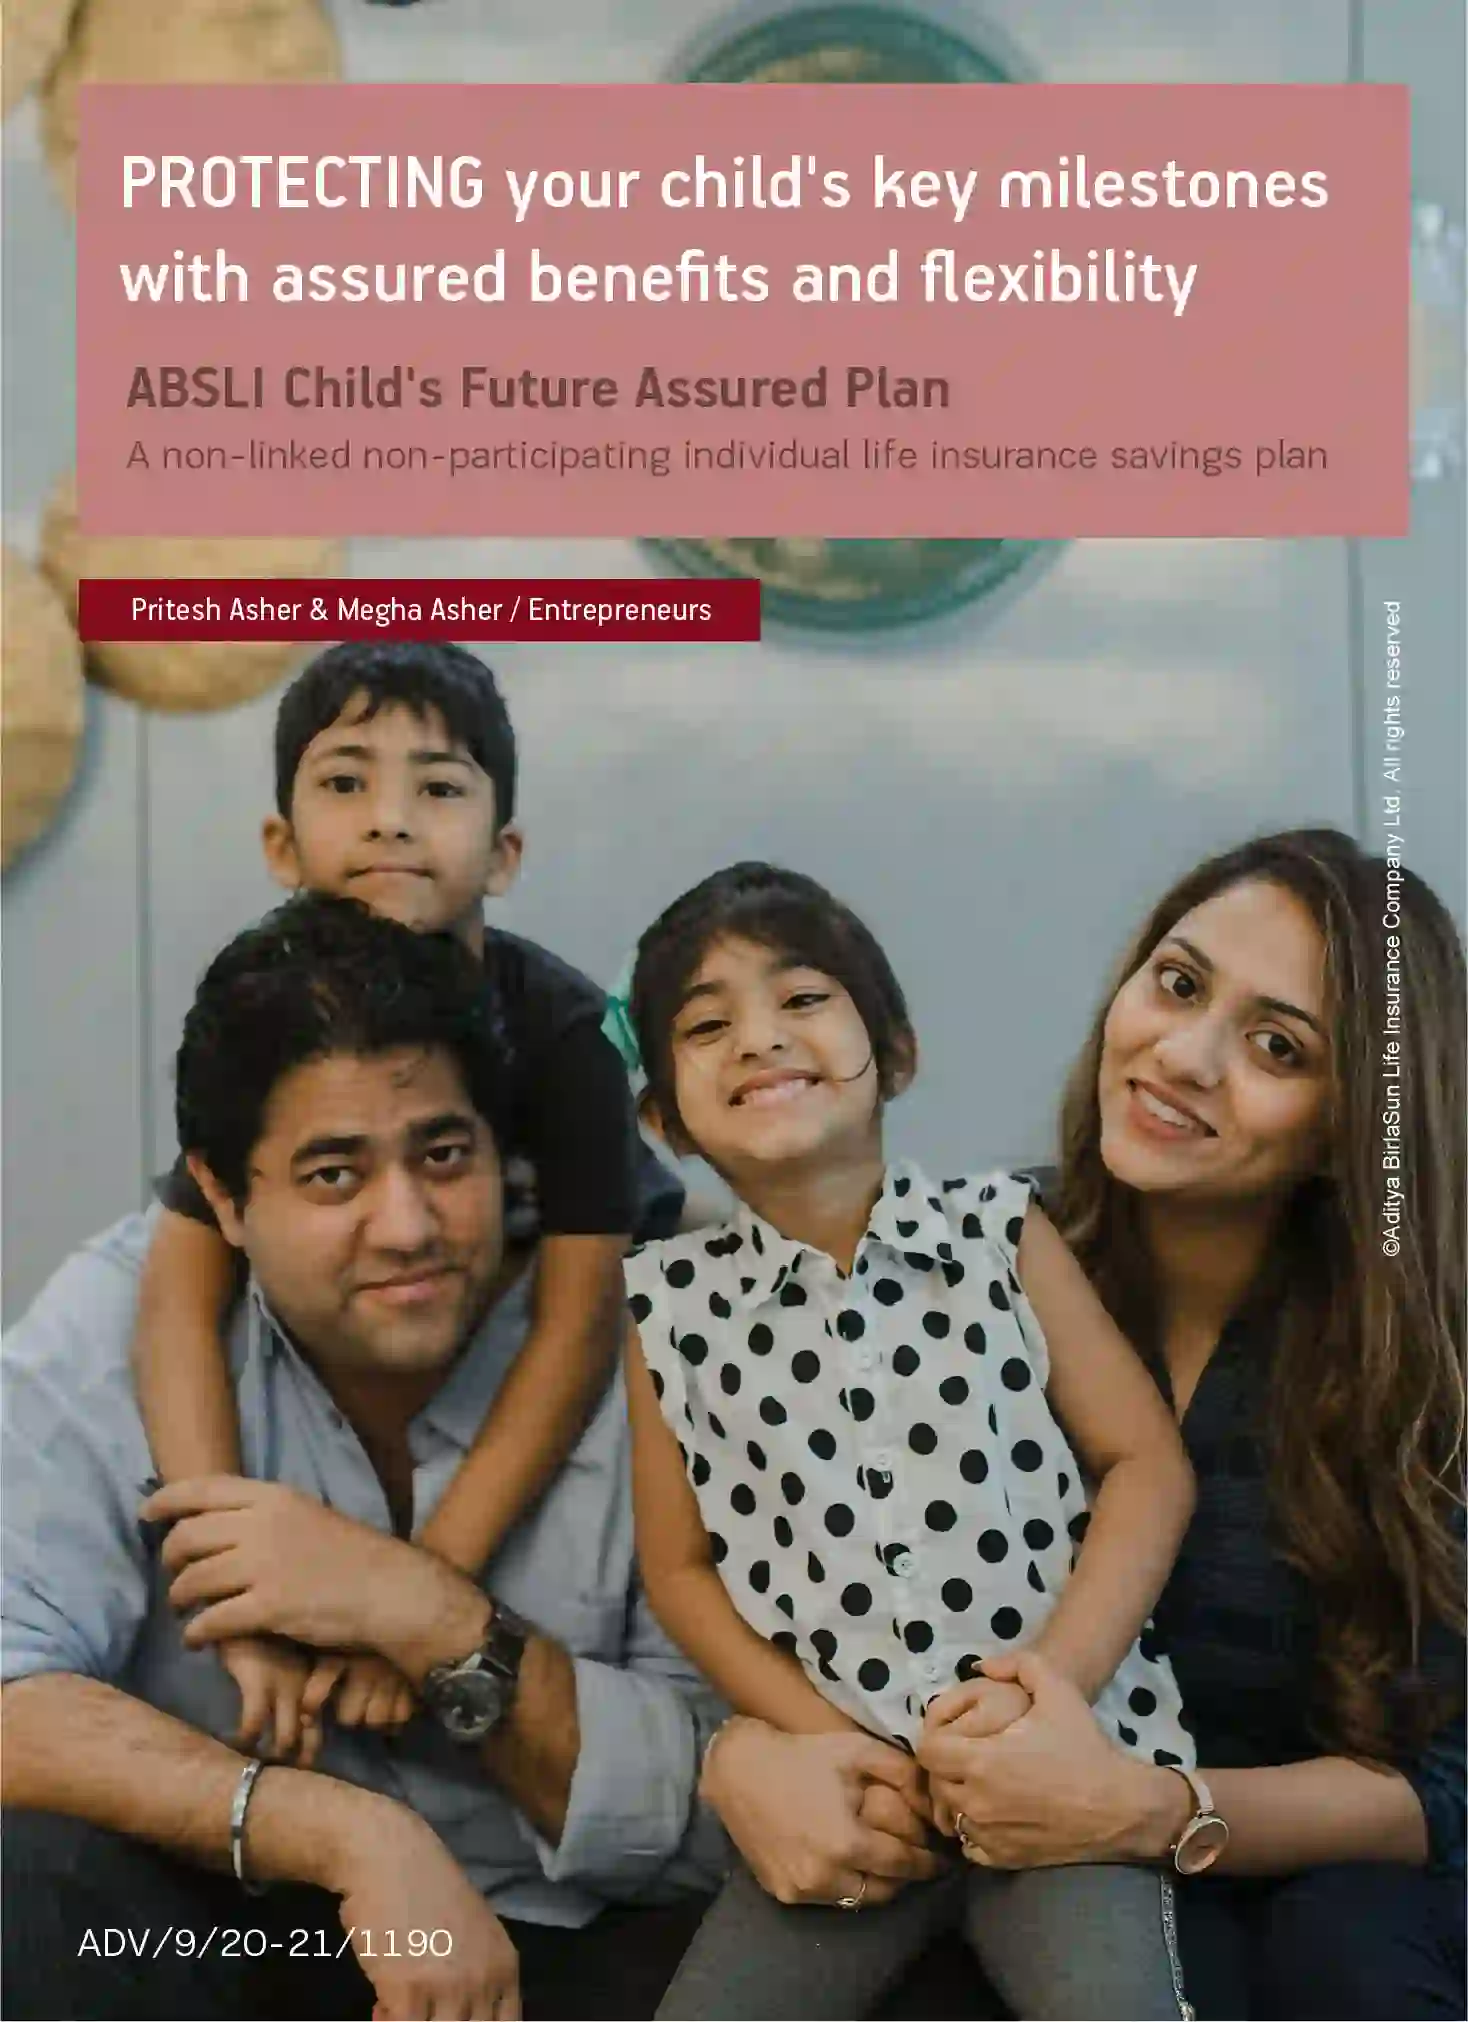 ABSLI Child’s Future Assured Plan (Child Plan)